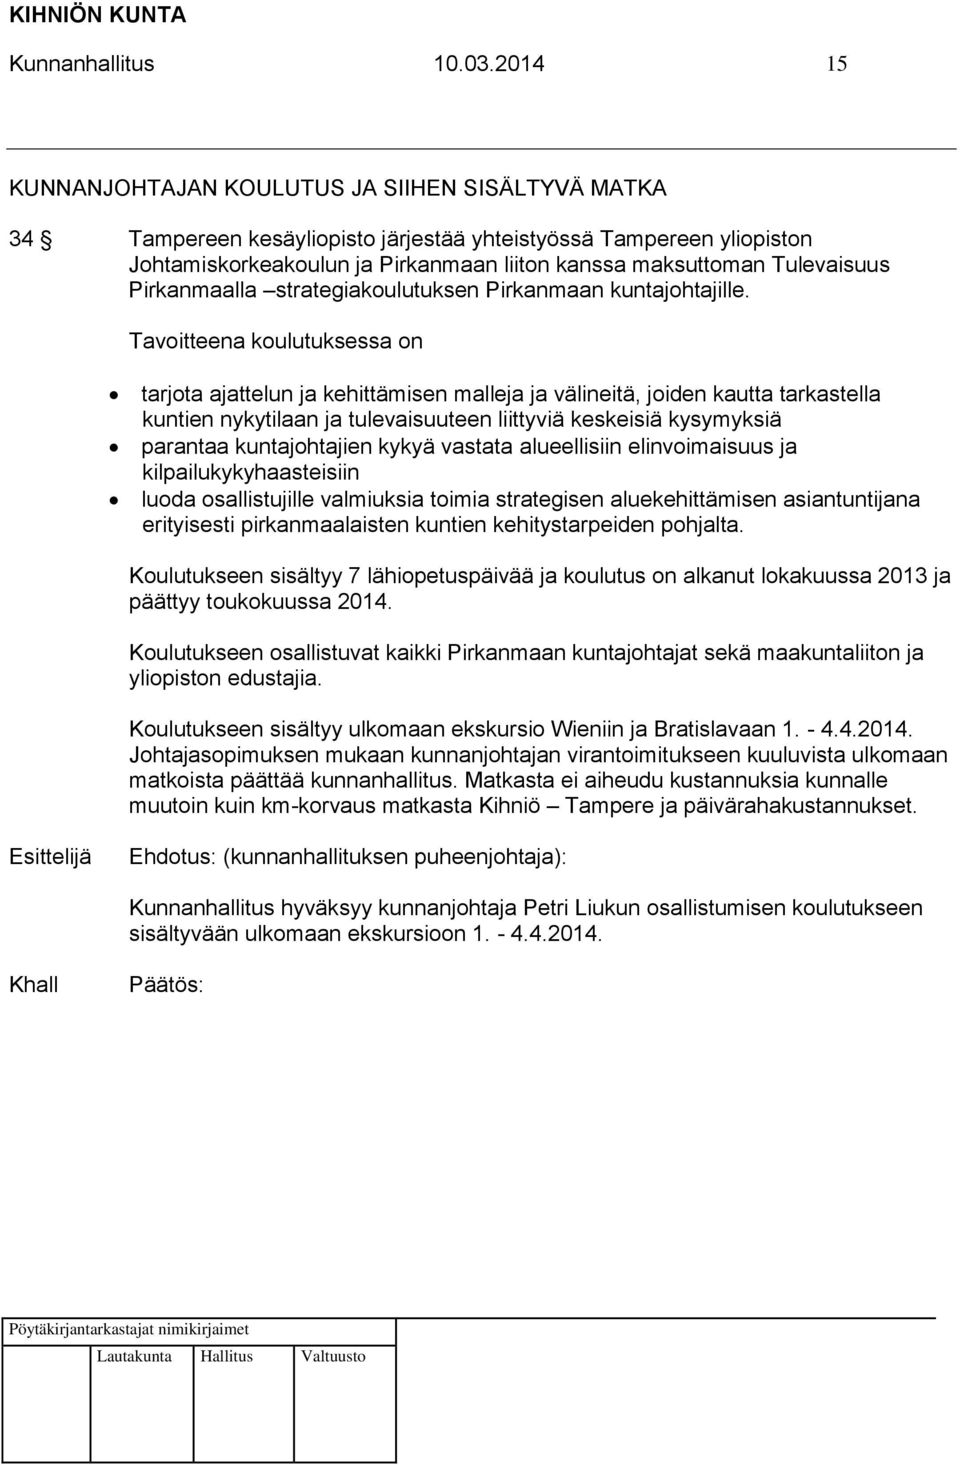 Tulevaisuus Pirkanmaalla strategiakoulutuksen Pirkanmaan kuntajohtajille.